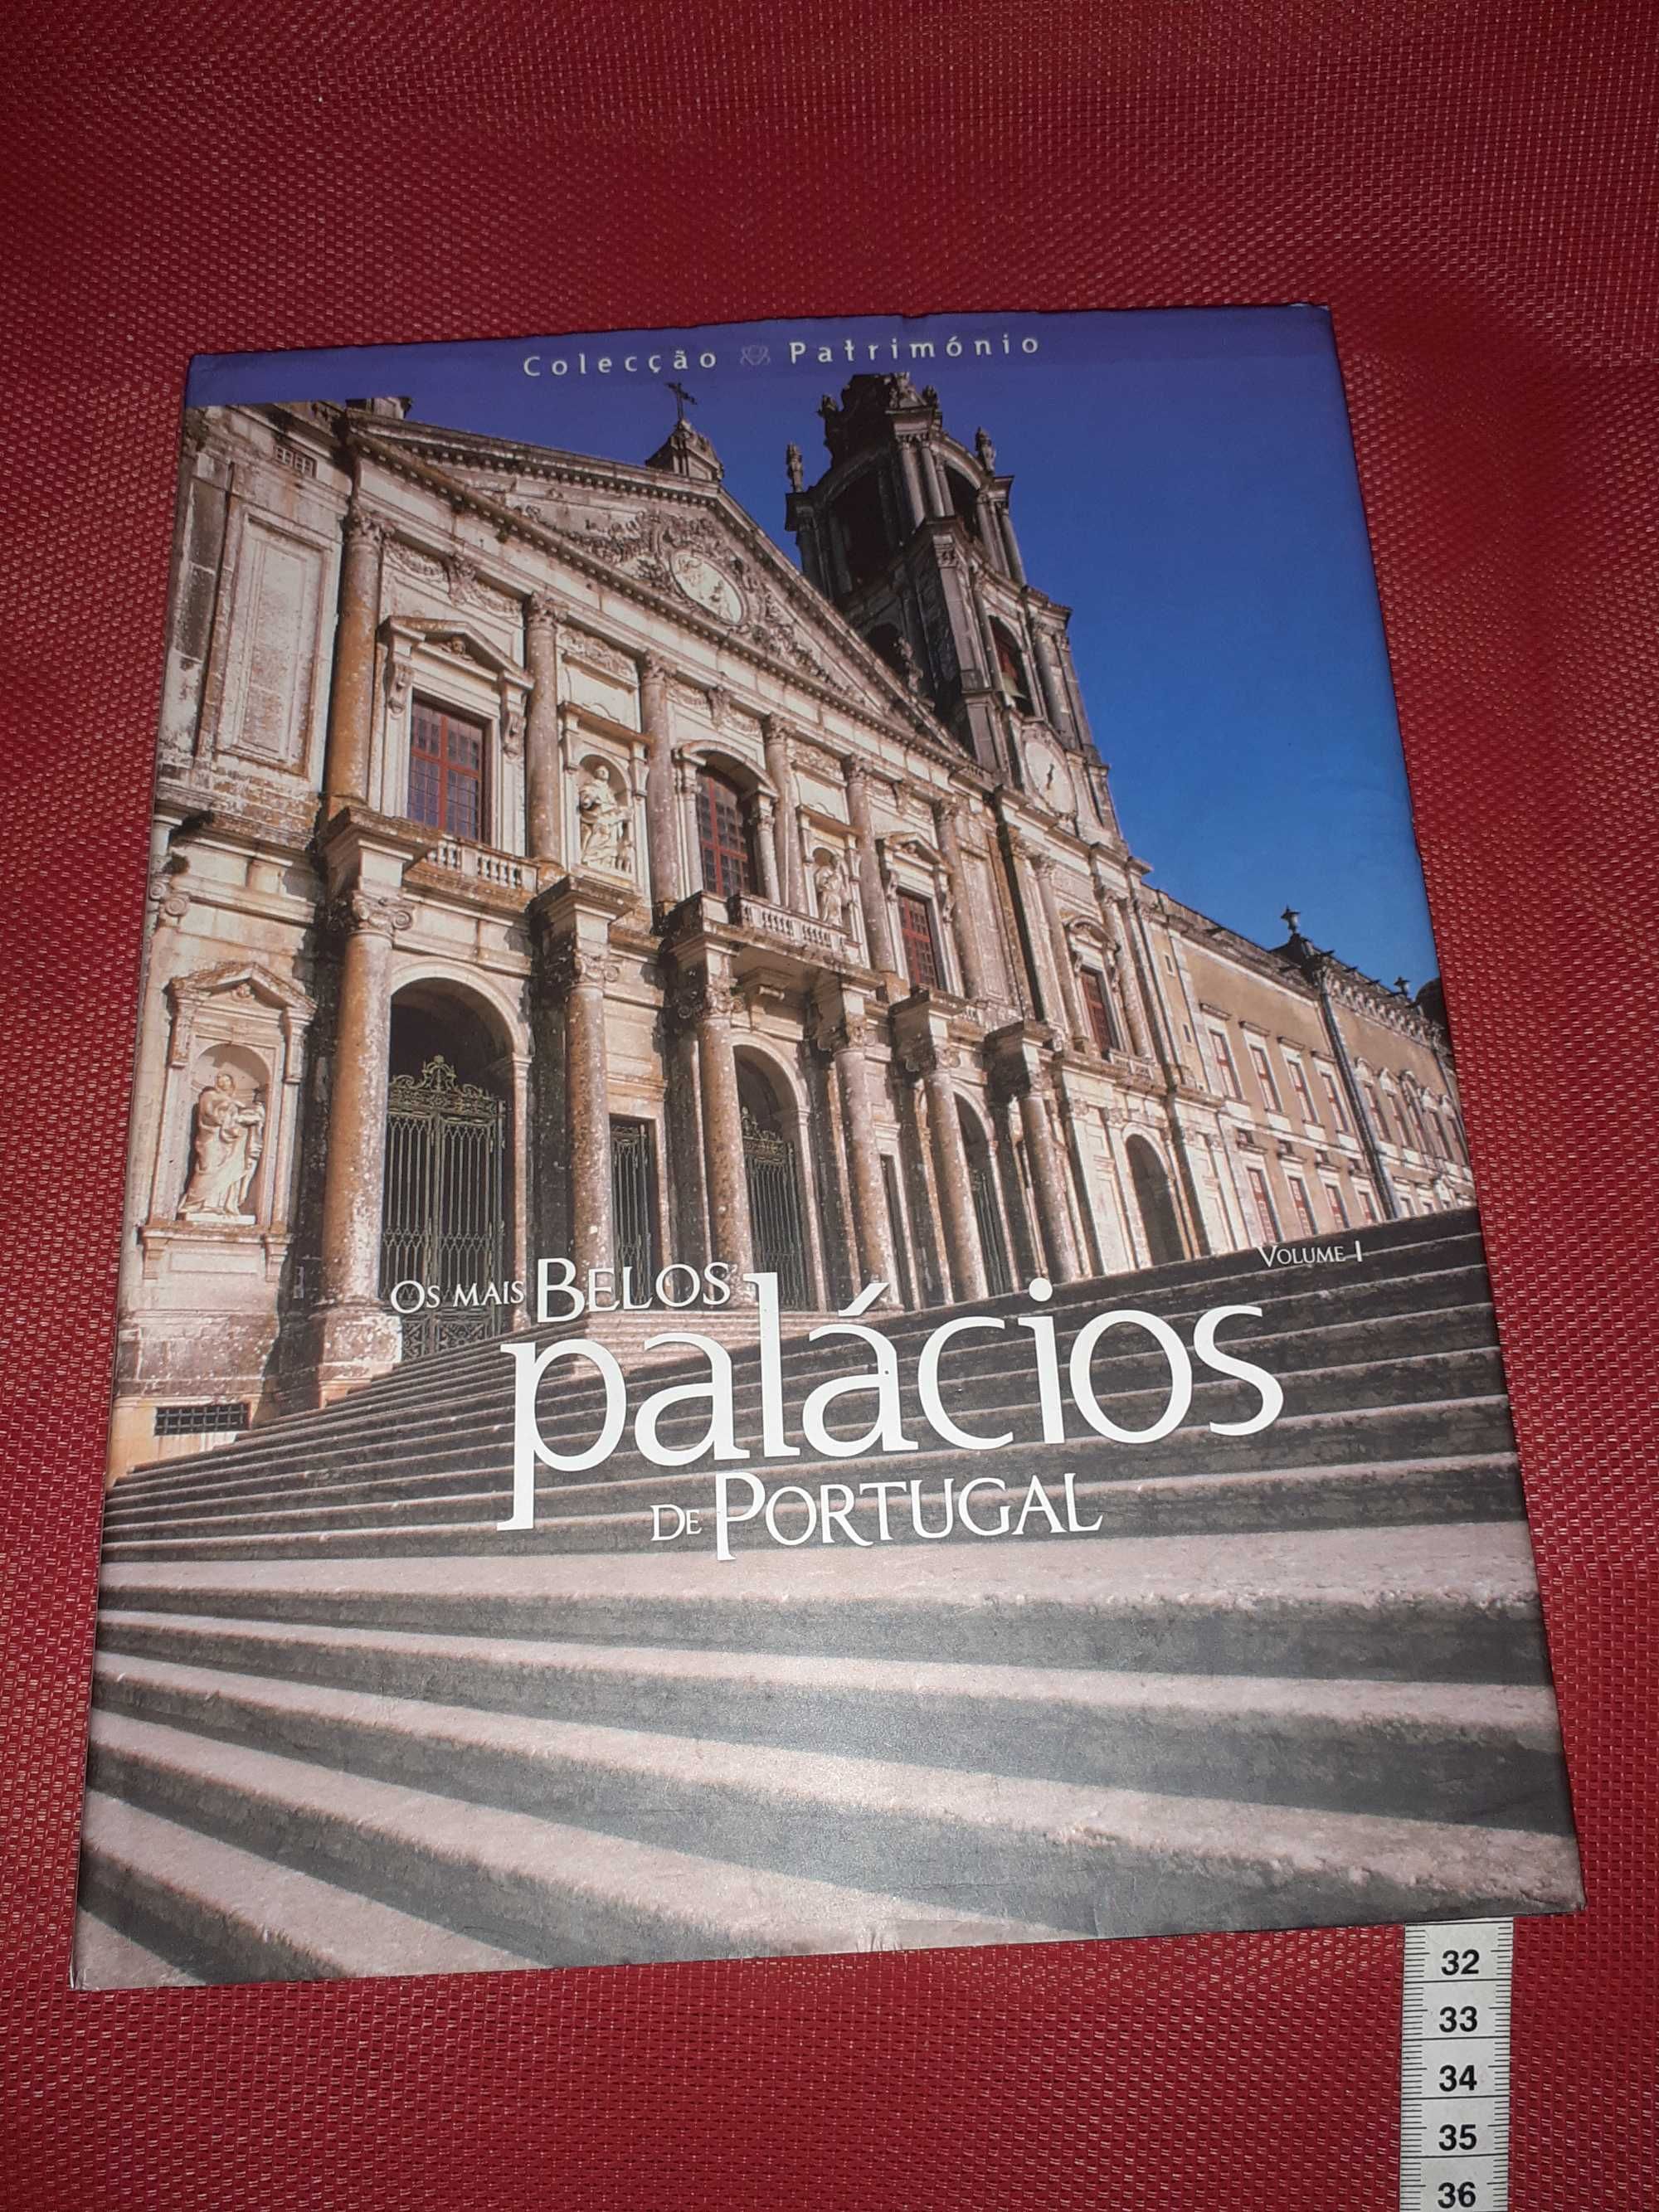 Livro "Os mais Belos palácios de Portugal"